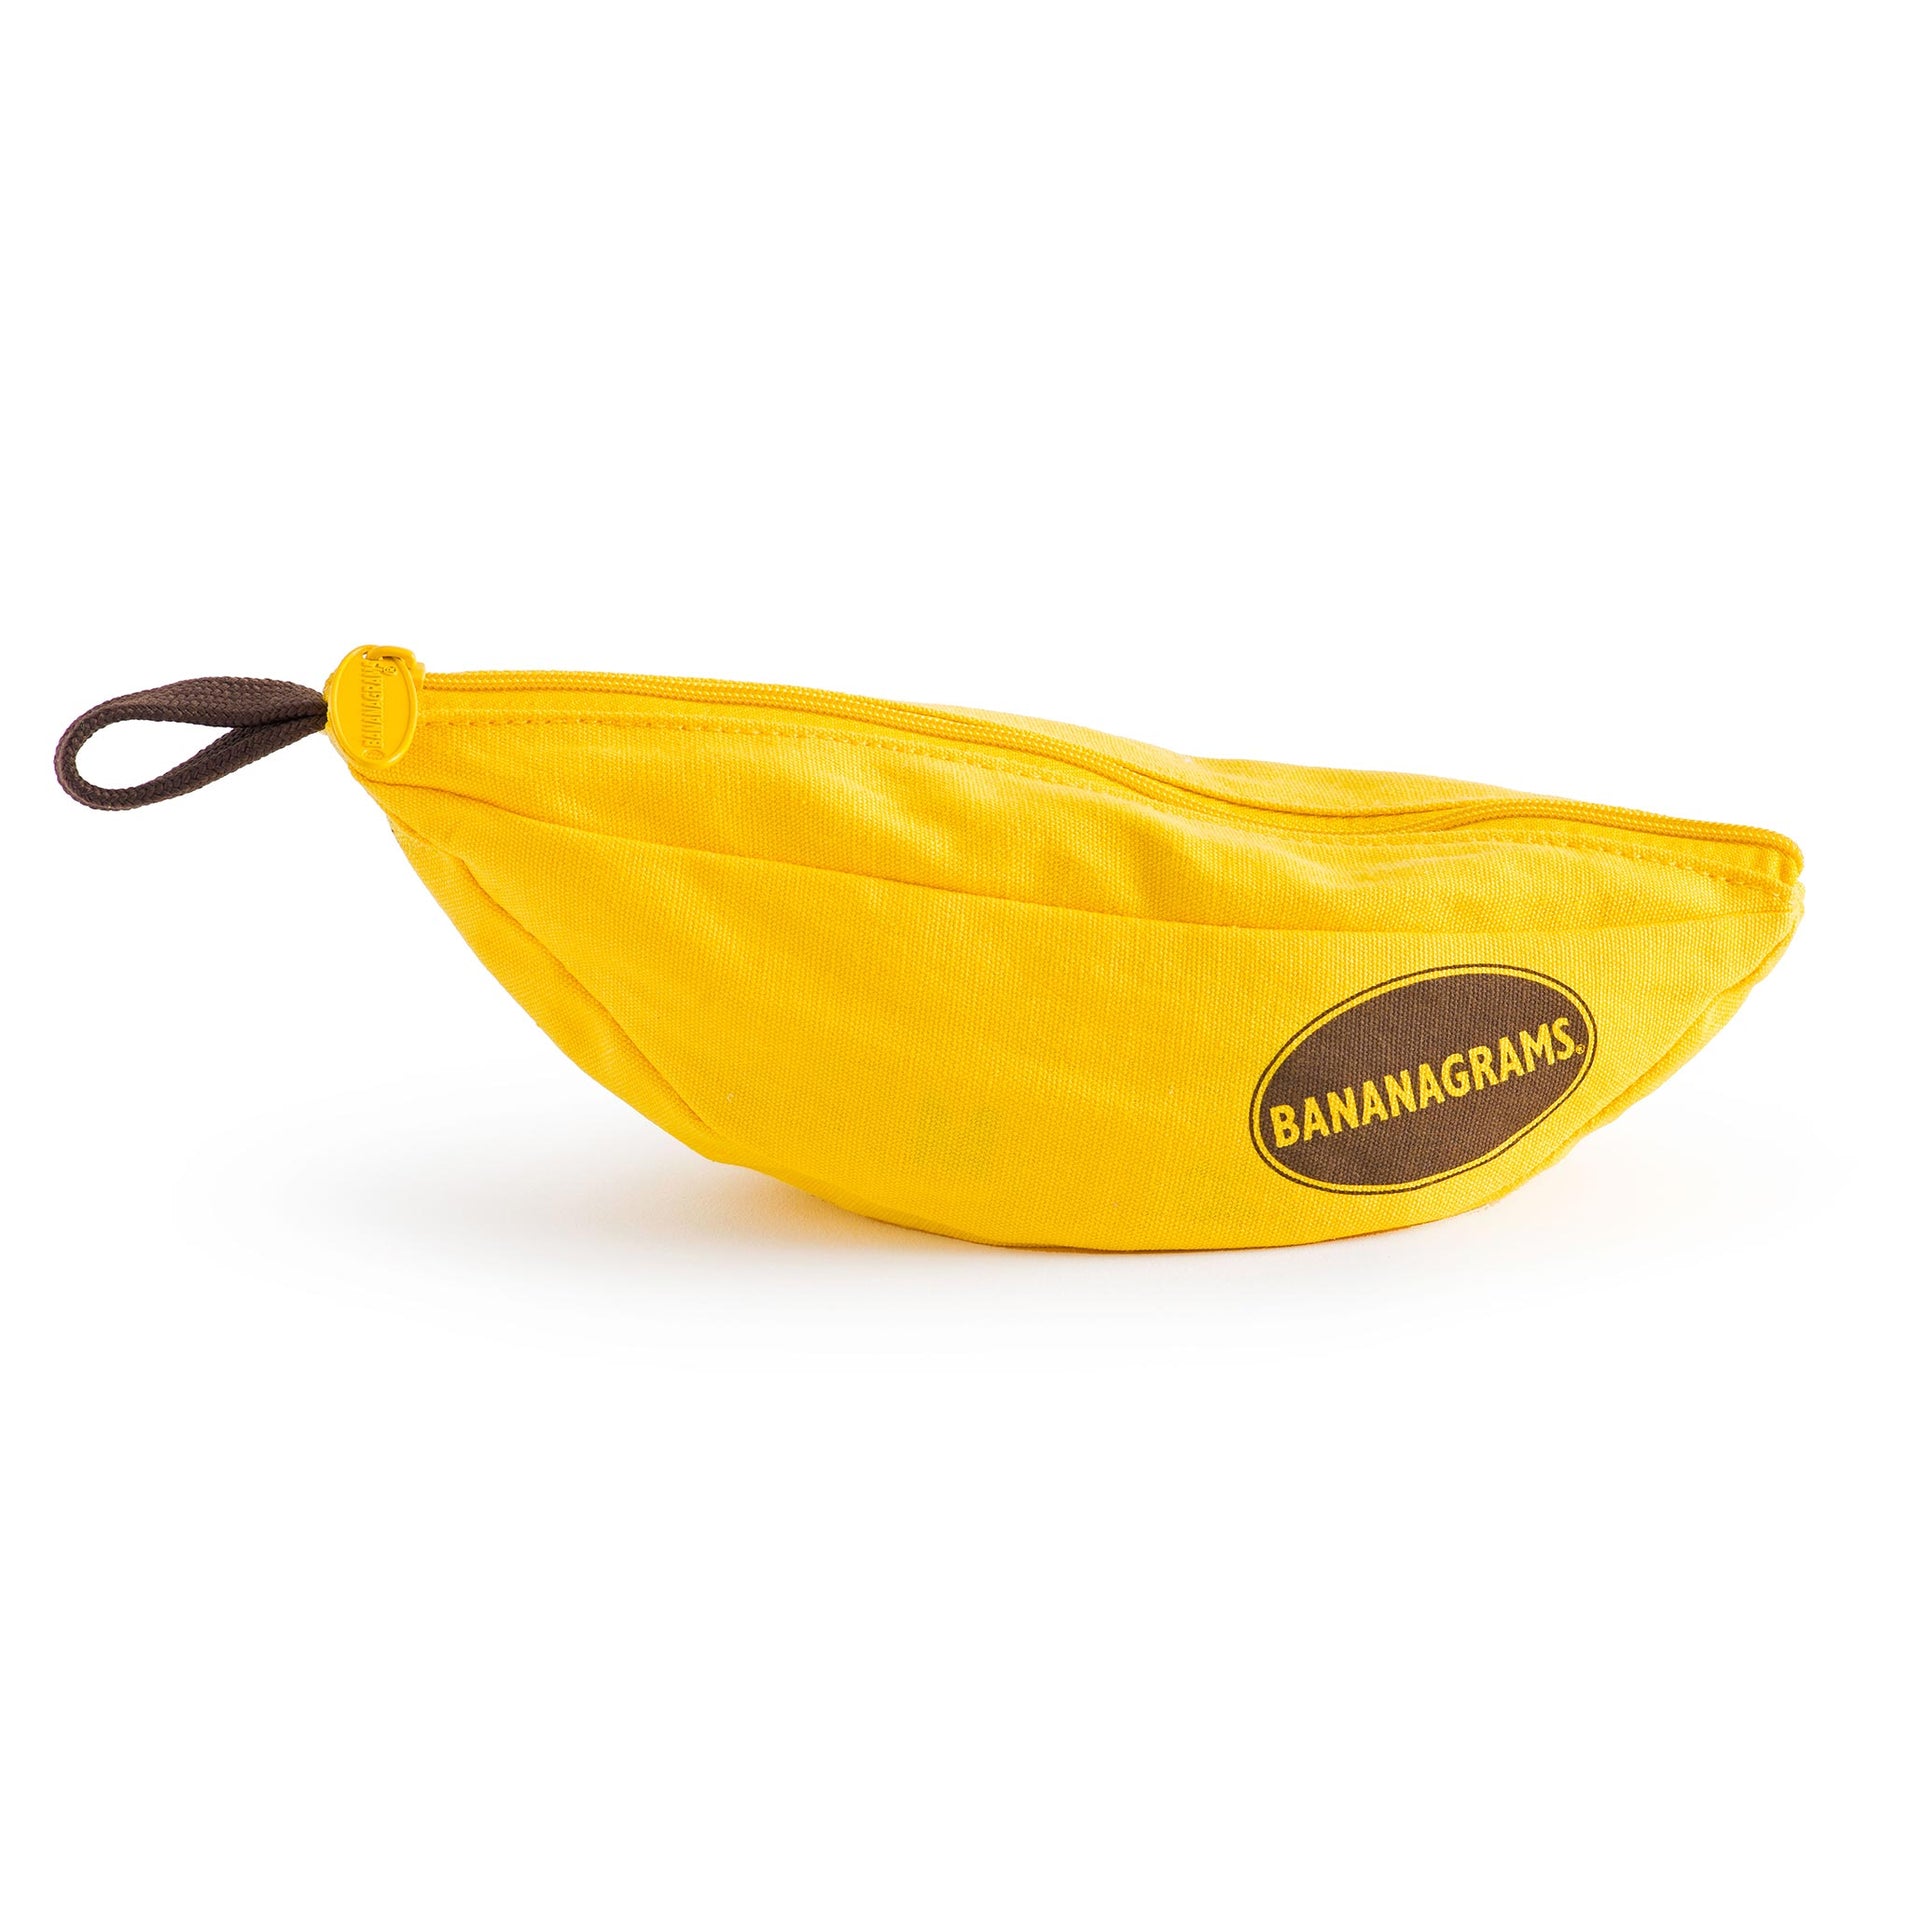 Banana bag